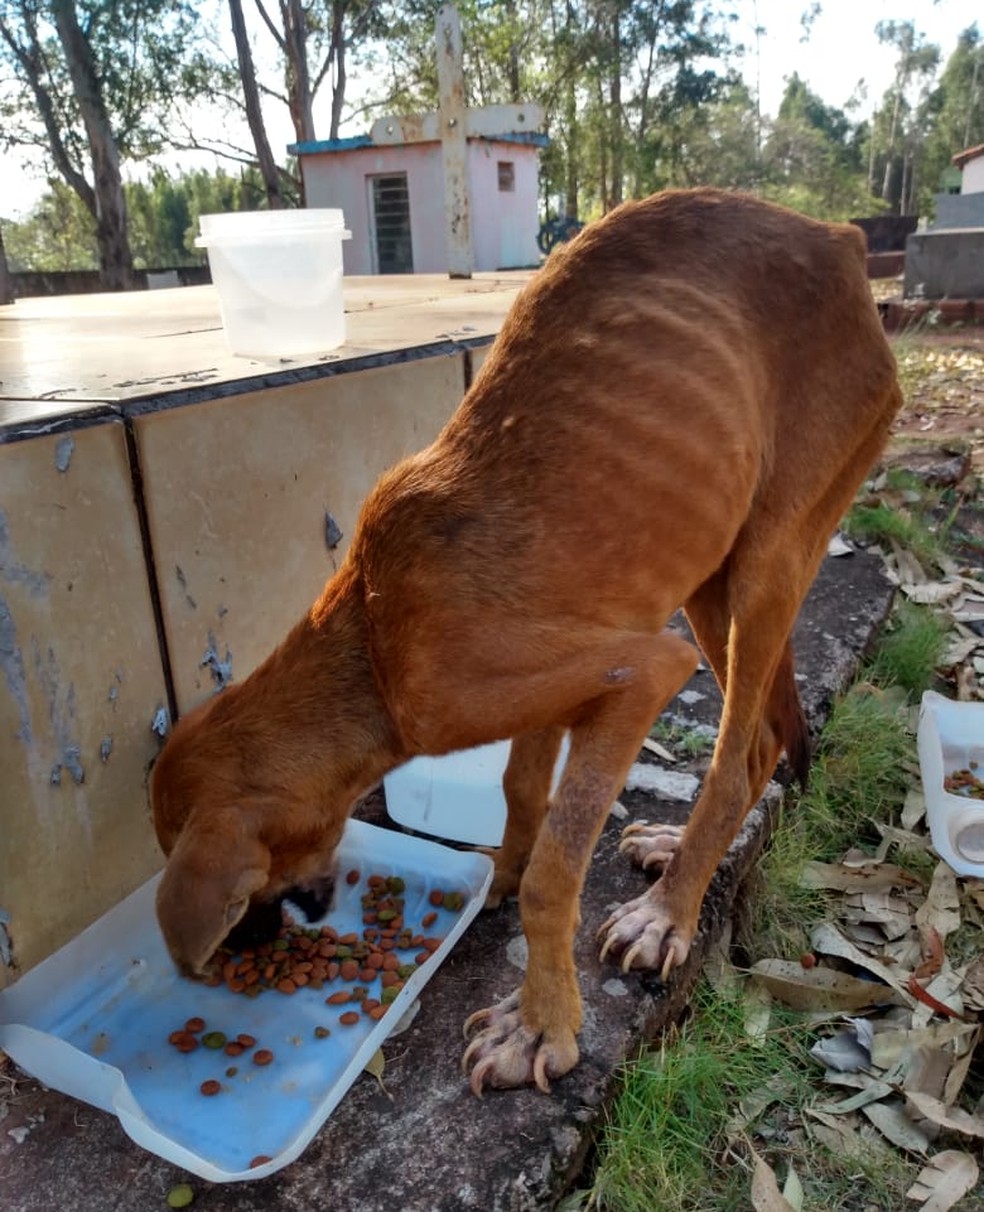 Policiais resgataram as duas cadelas que haviam sido abandonadas no Cemitério Municipal de Rosana (SP) — Foto: Polícia Militar Ambiental